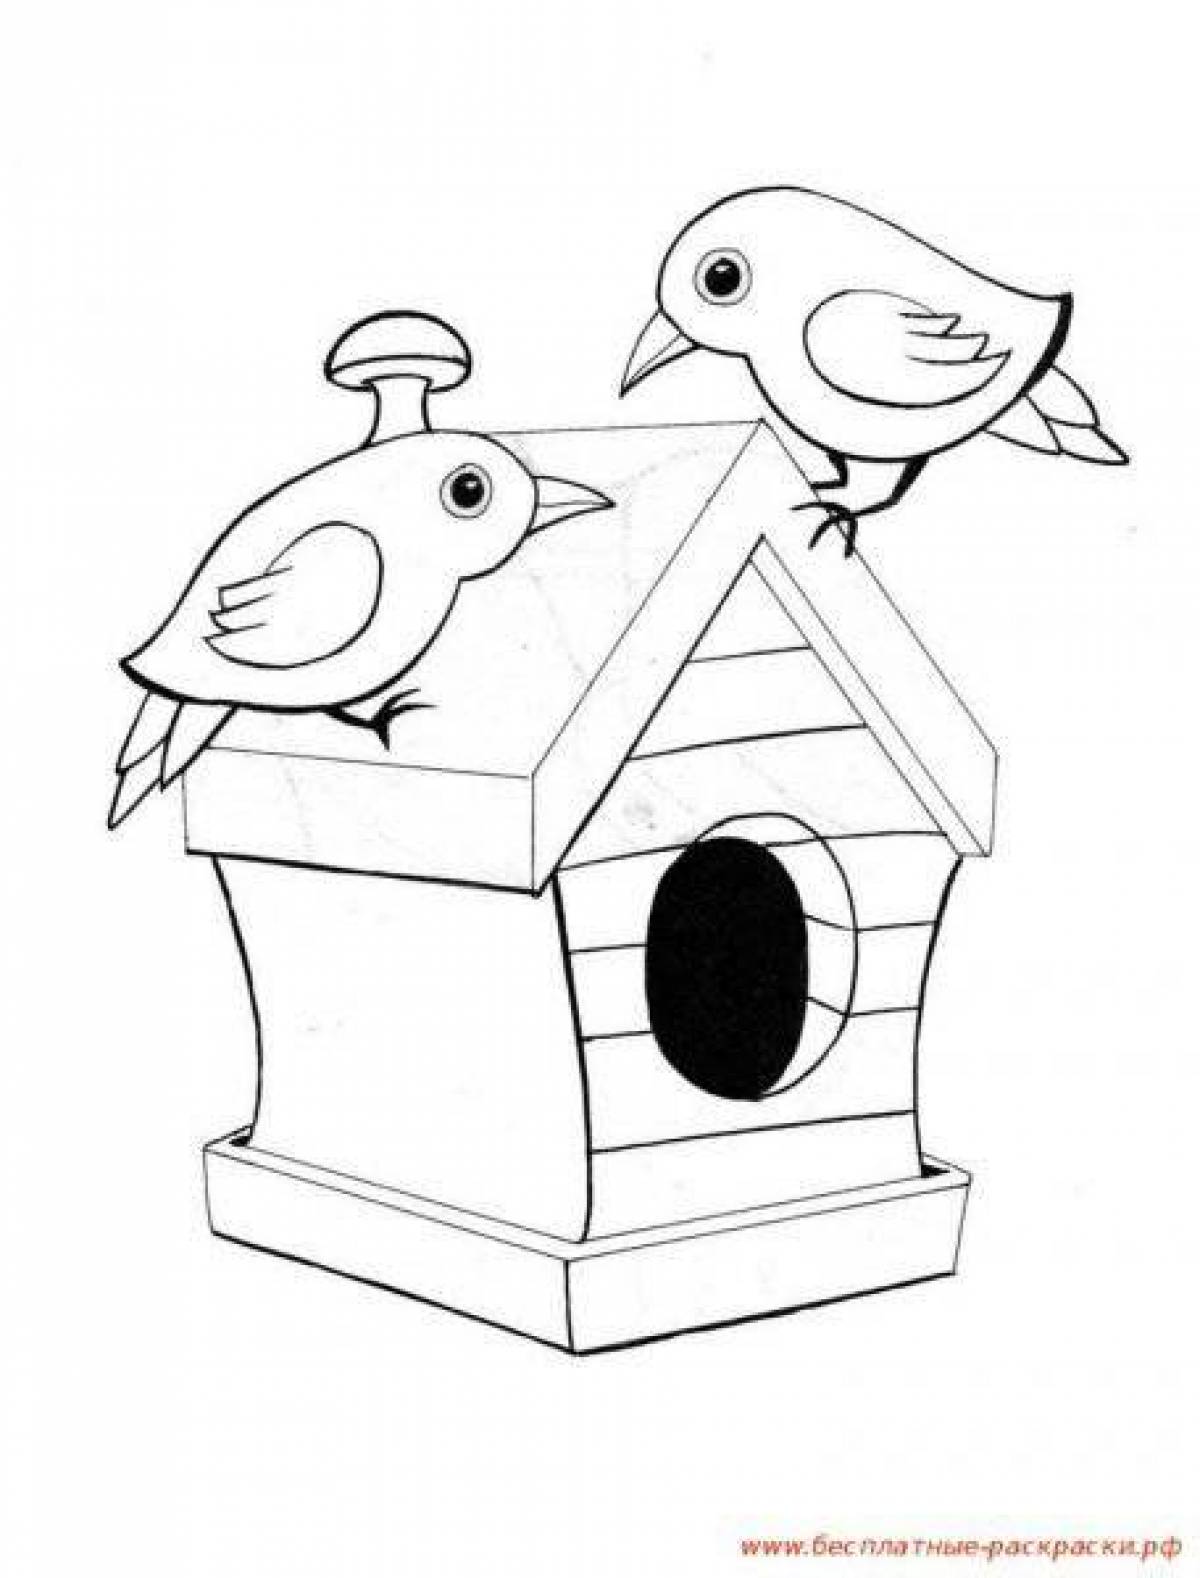 Adorable bird feeder coloring book for kids